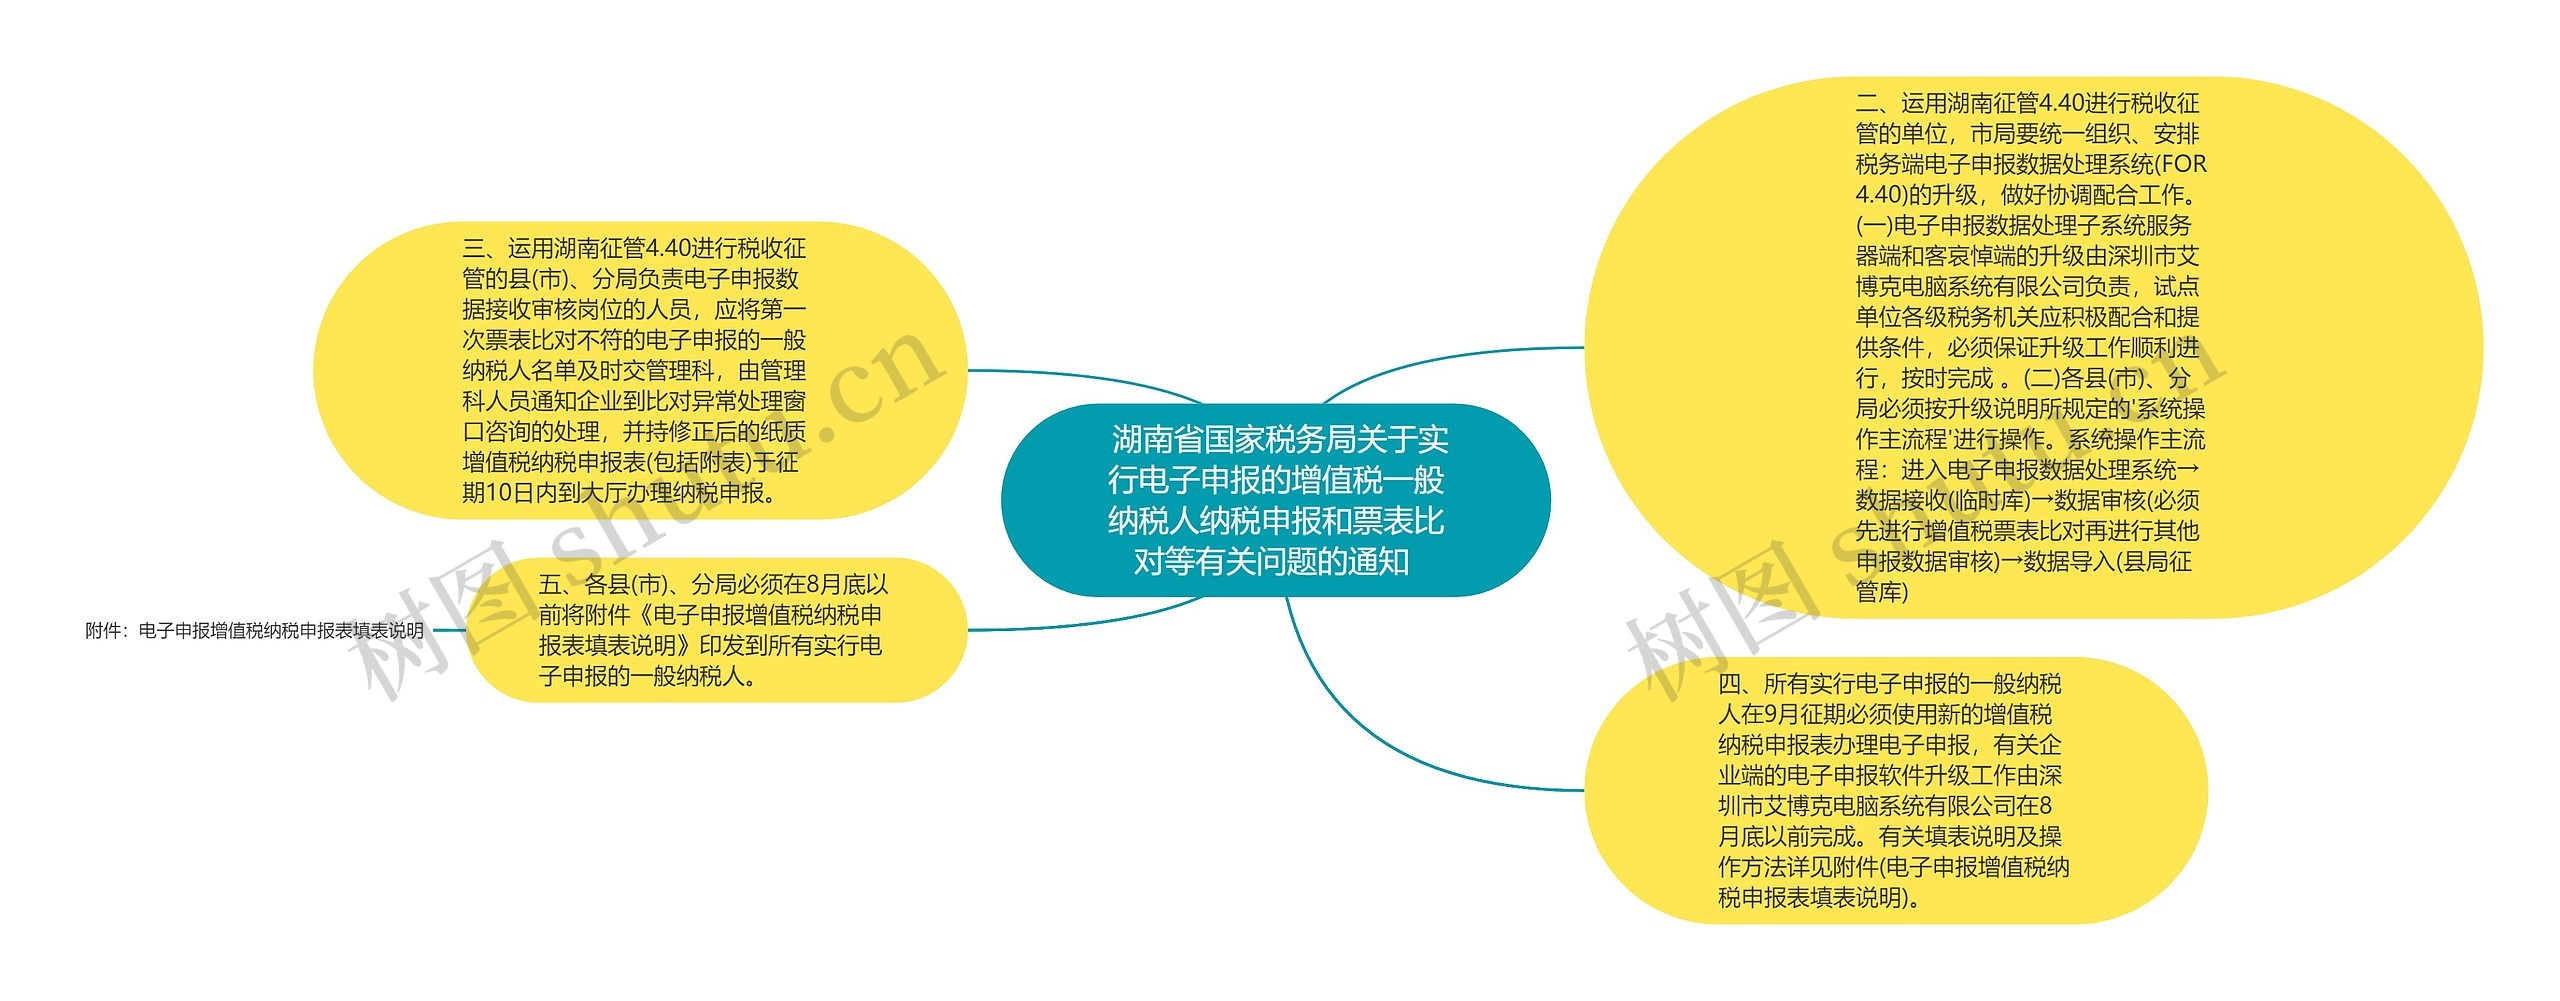  湖南省国家税务局关于实行电子申报的增值税一般纳税人纳税申报和票表比对等有关问题的通知 思维导图